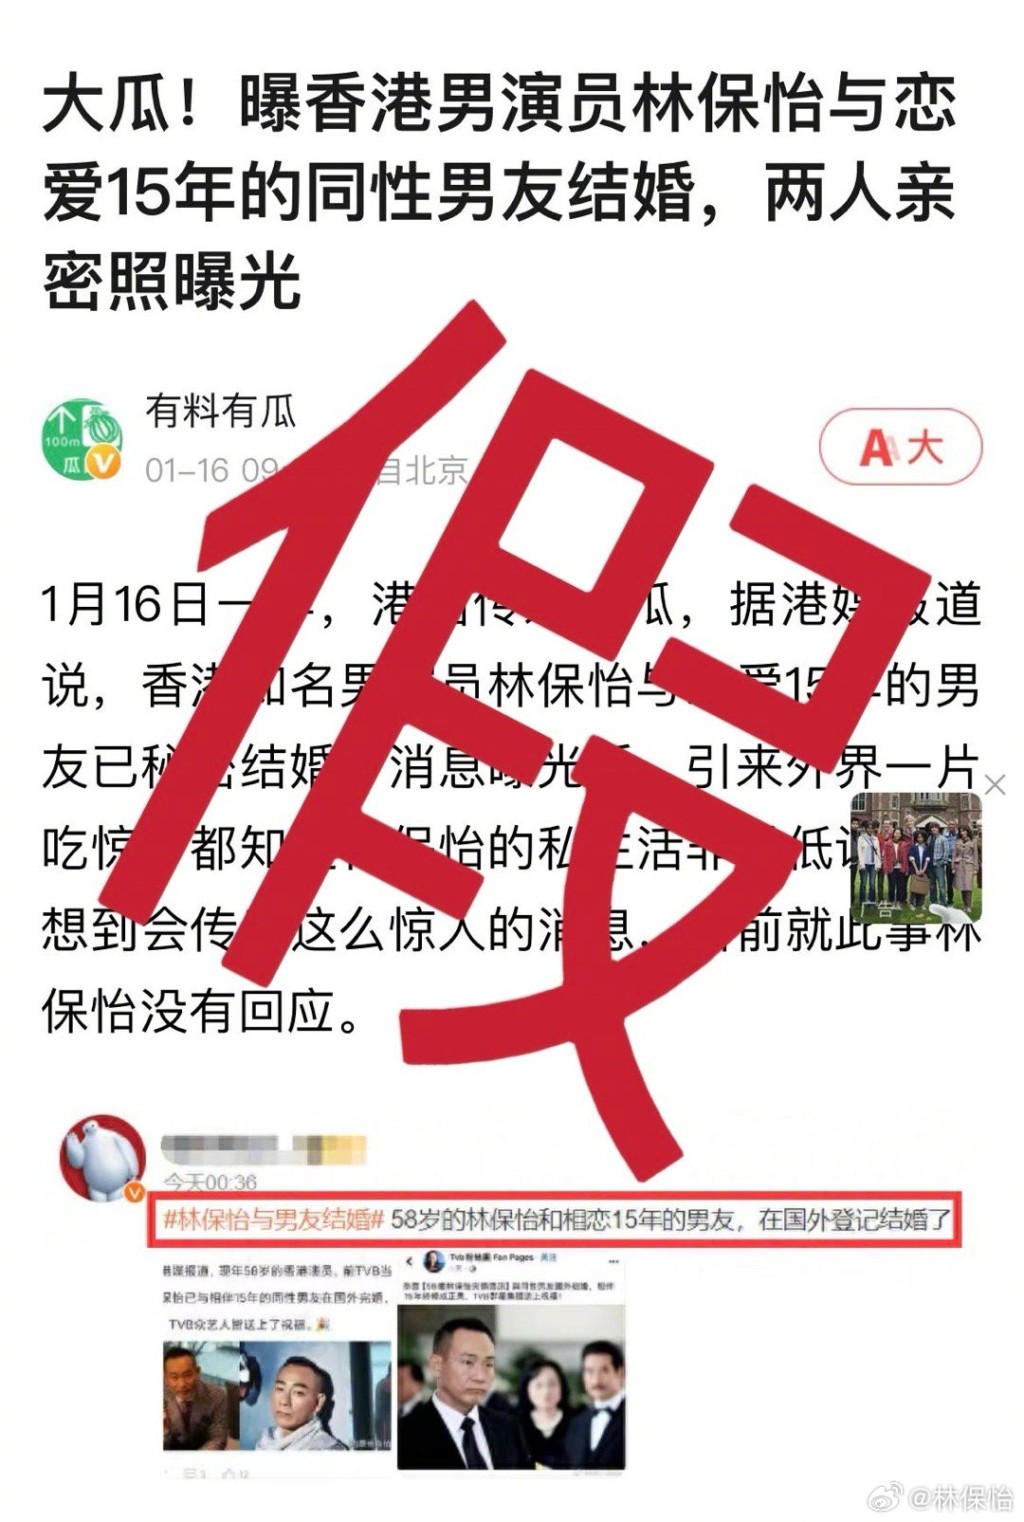 部份假新闻更言之凿凿的写到“TVB群星集体送上祝福”。